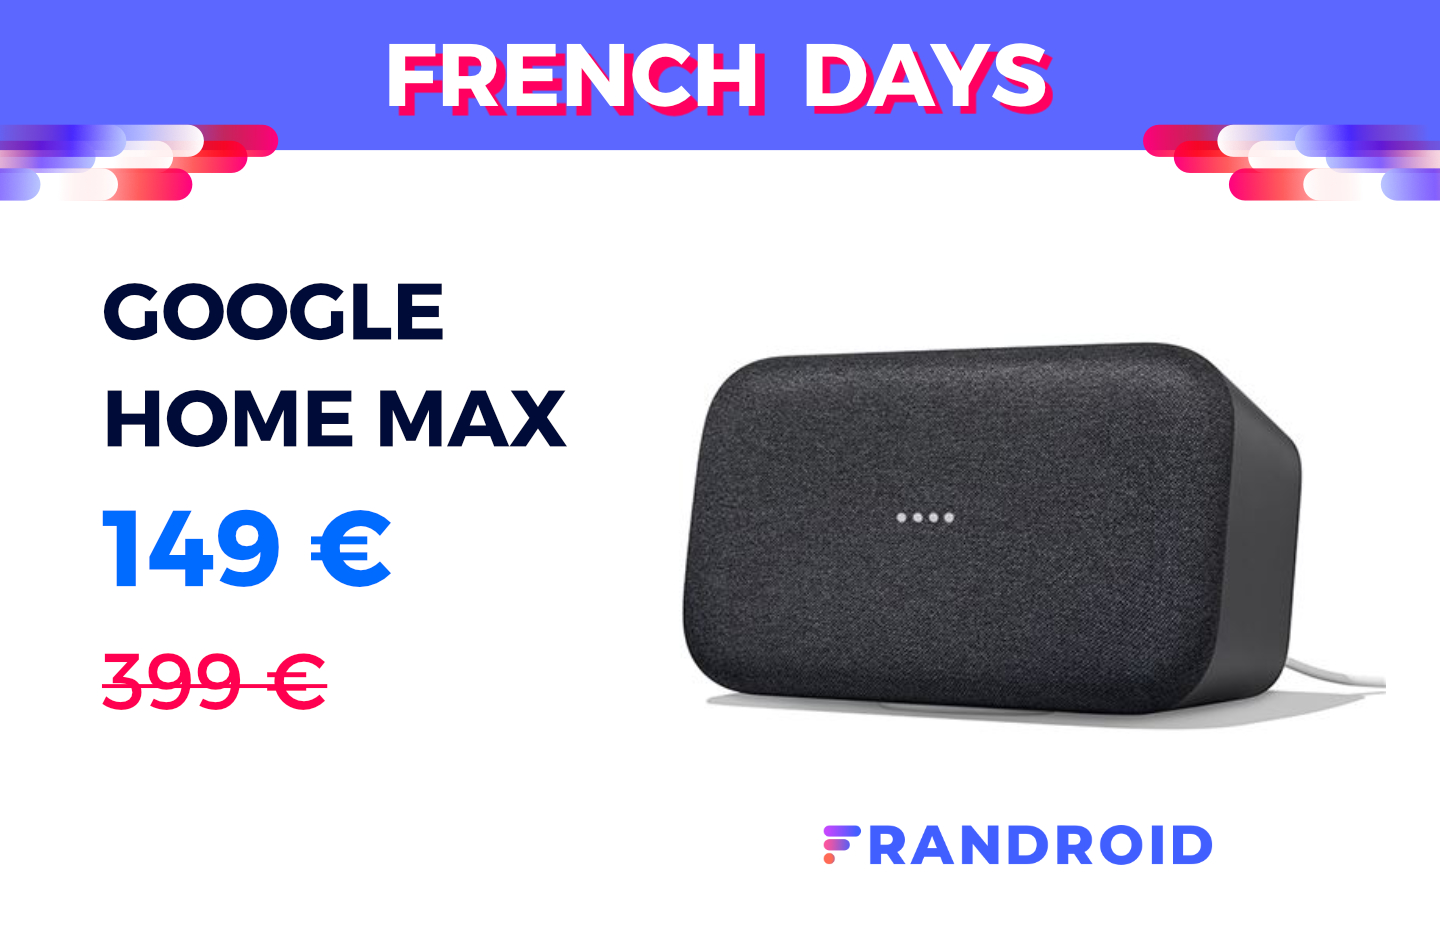 Promo : cette enceinte intelligente Google voit son prix baisser de 47%  pendant les French Days 